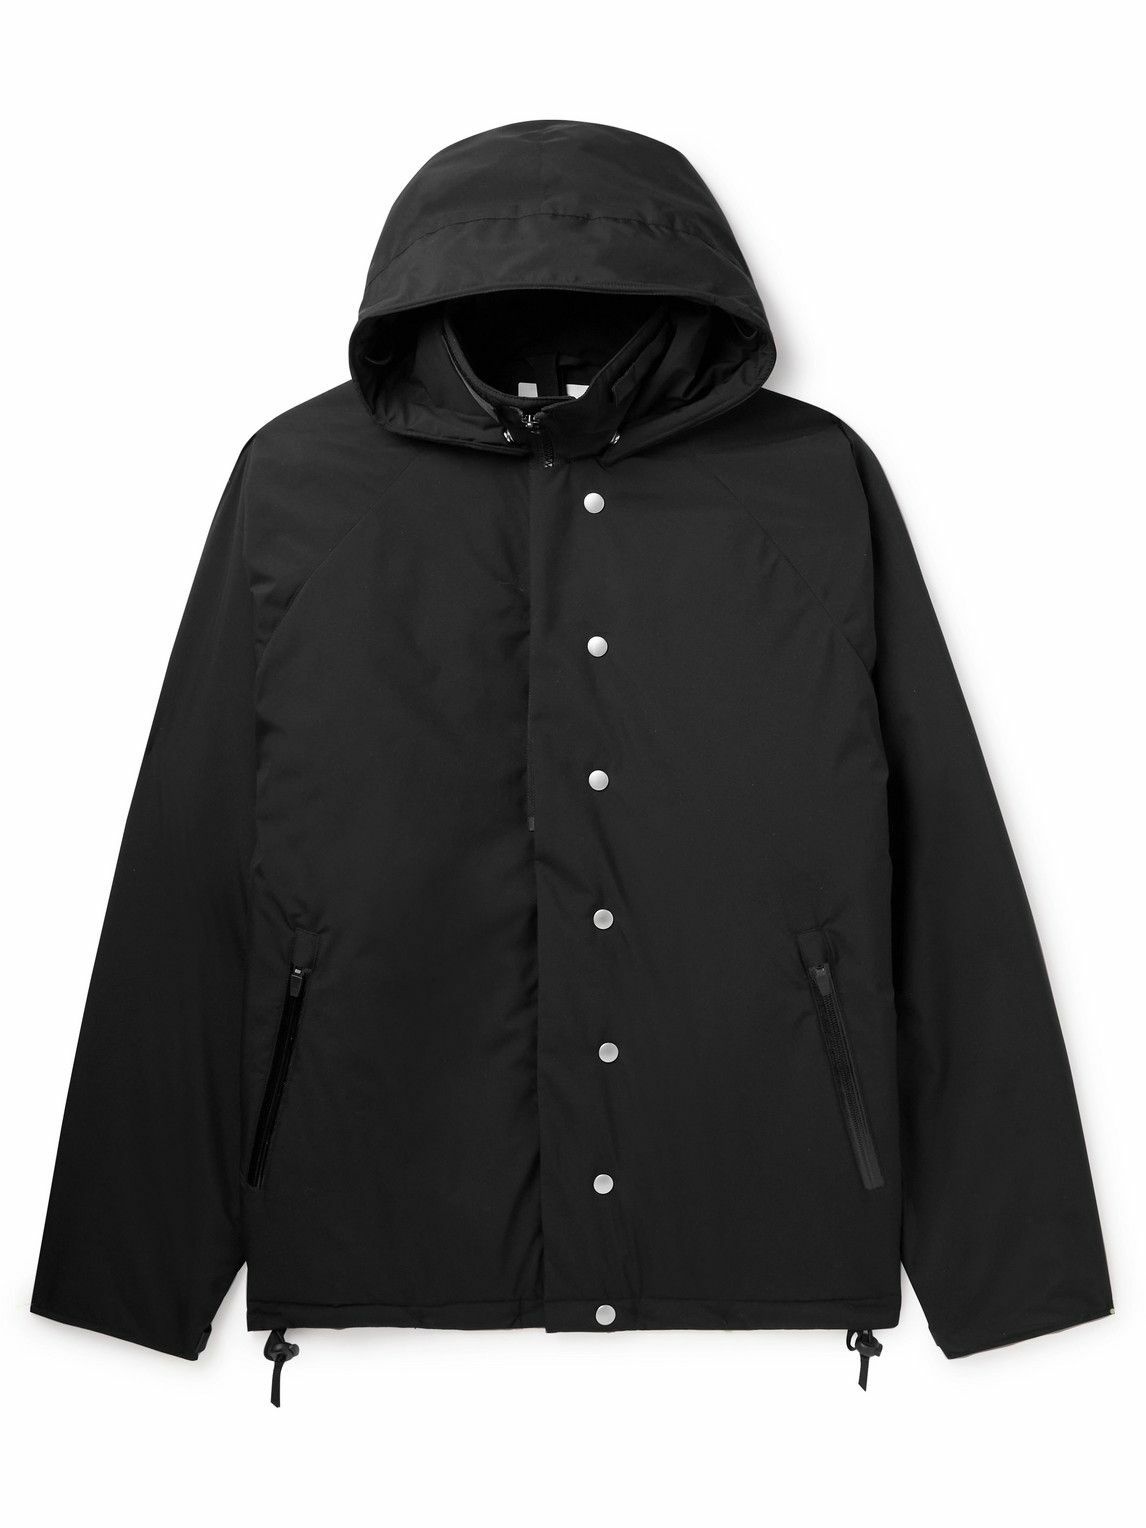 ACRONYM - PrimaLoft® WINDSTOPPER® Hooded Jacket - Black